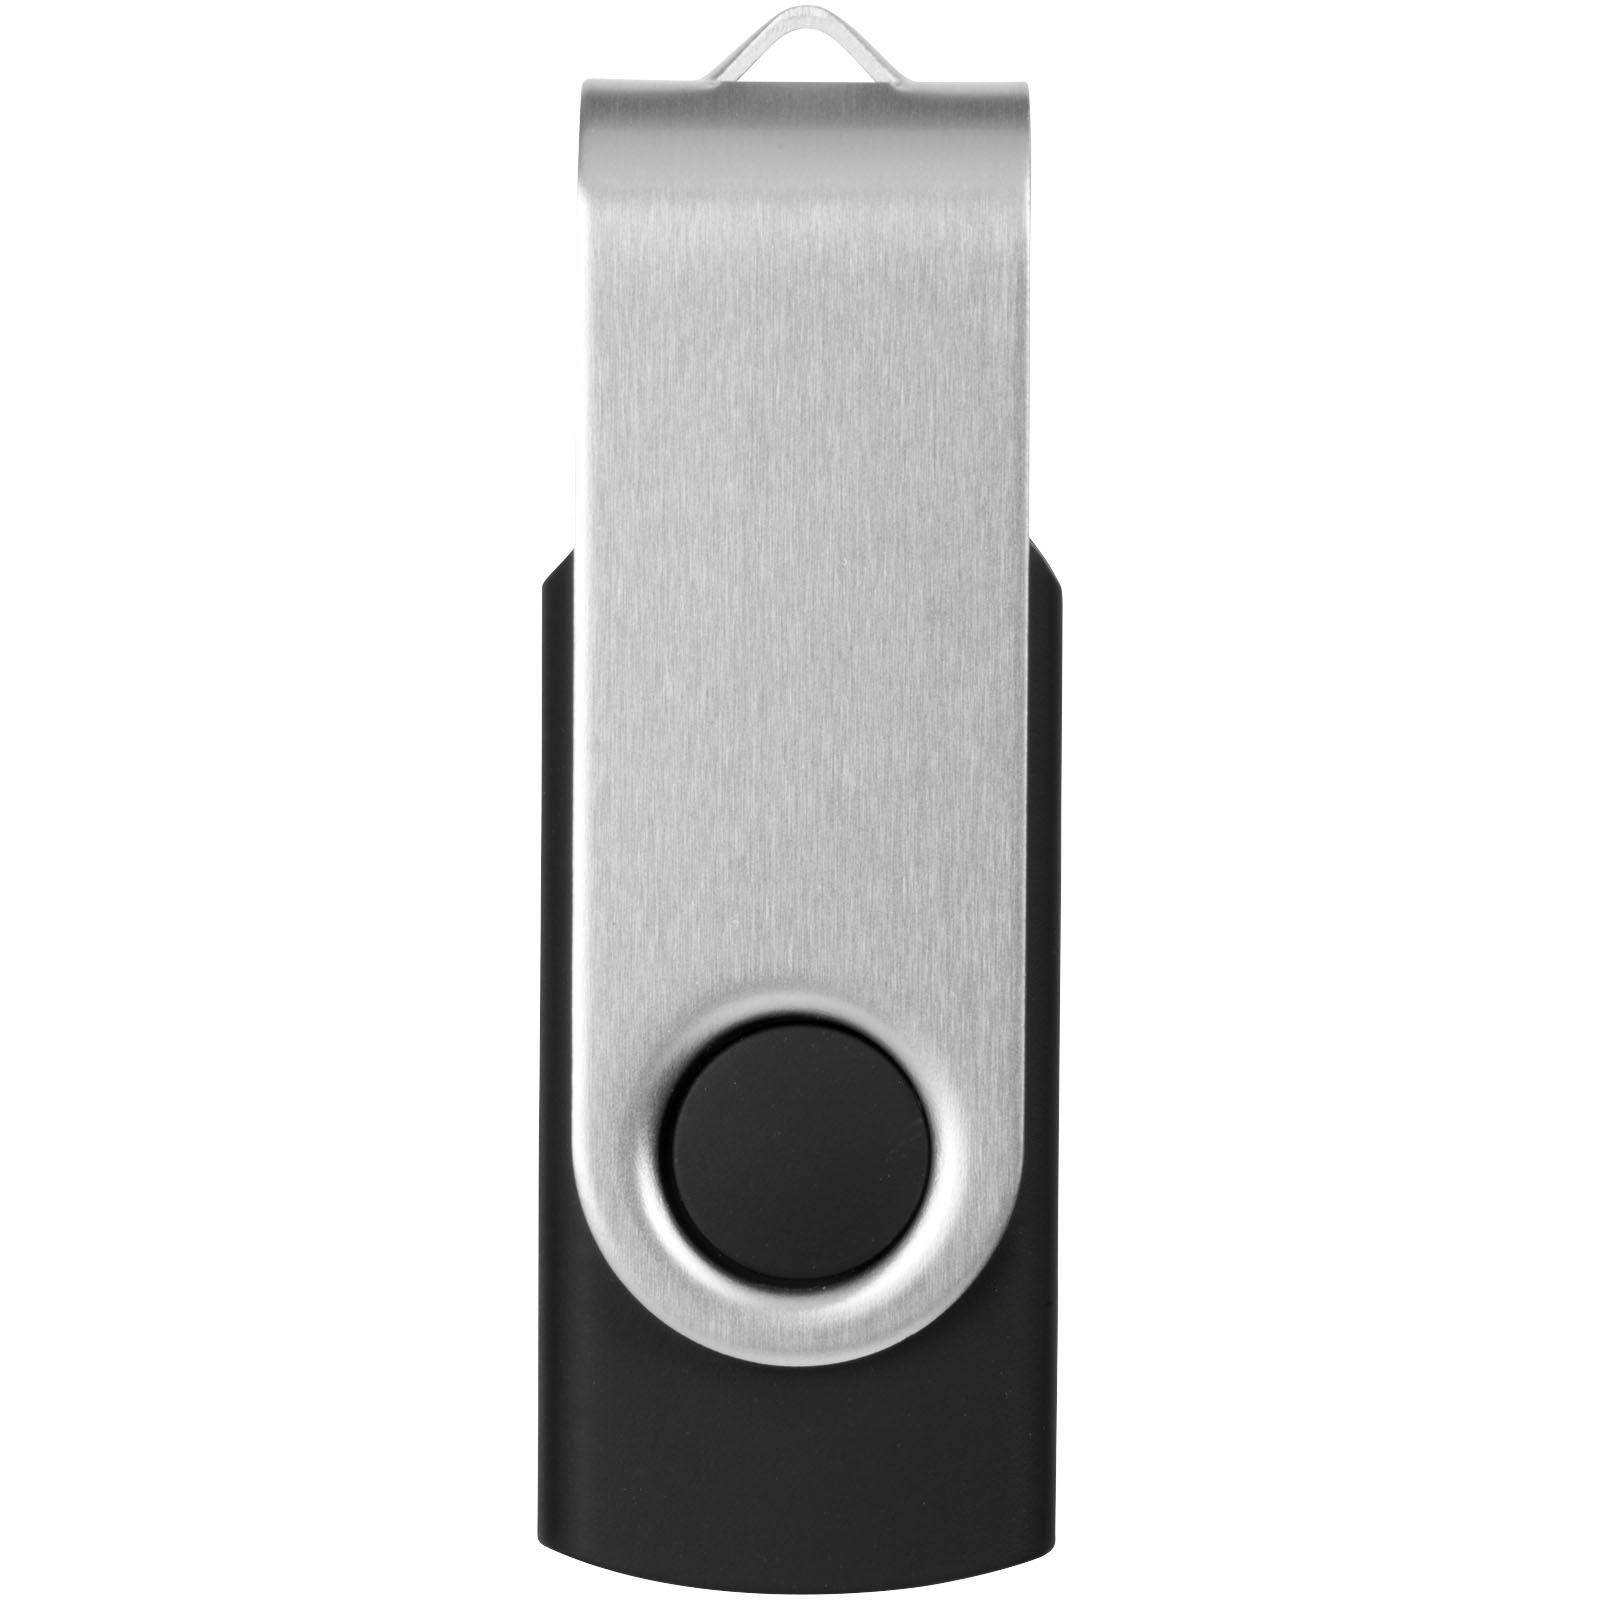 Clés USB publicitaires - Clé USB basic 32 Go Rotate - 3